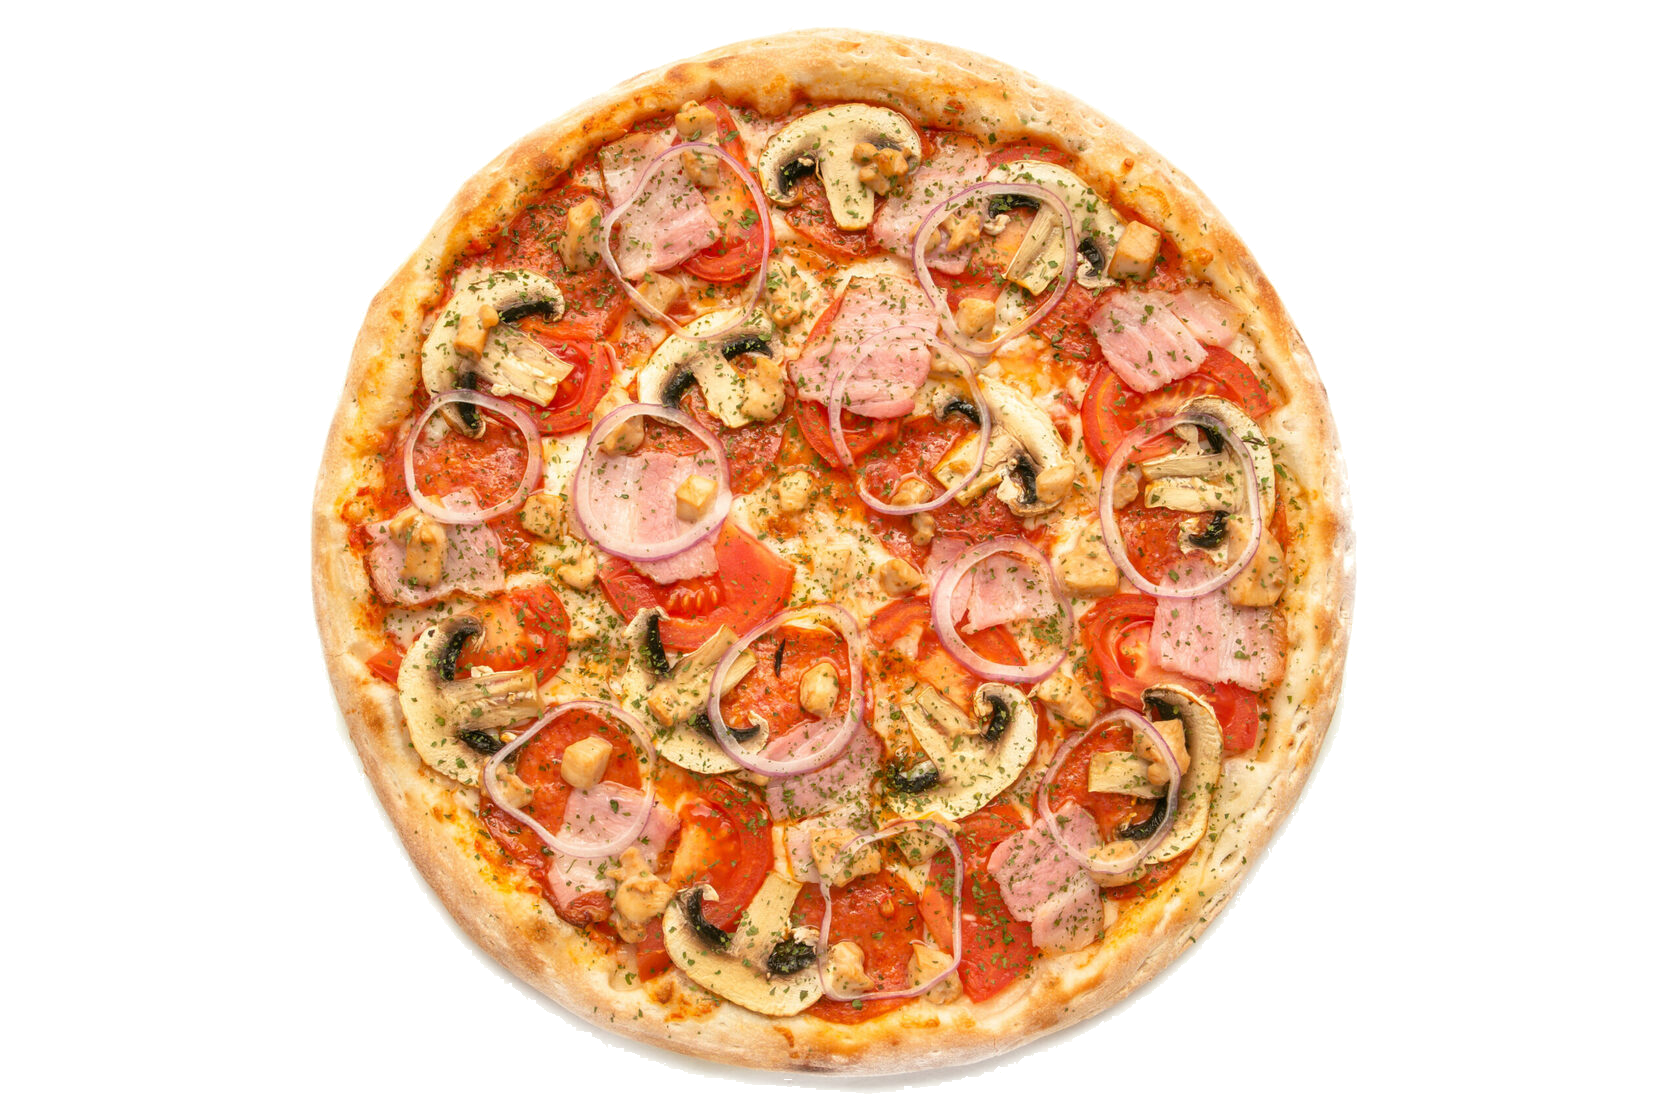 Licorce pizza imdb